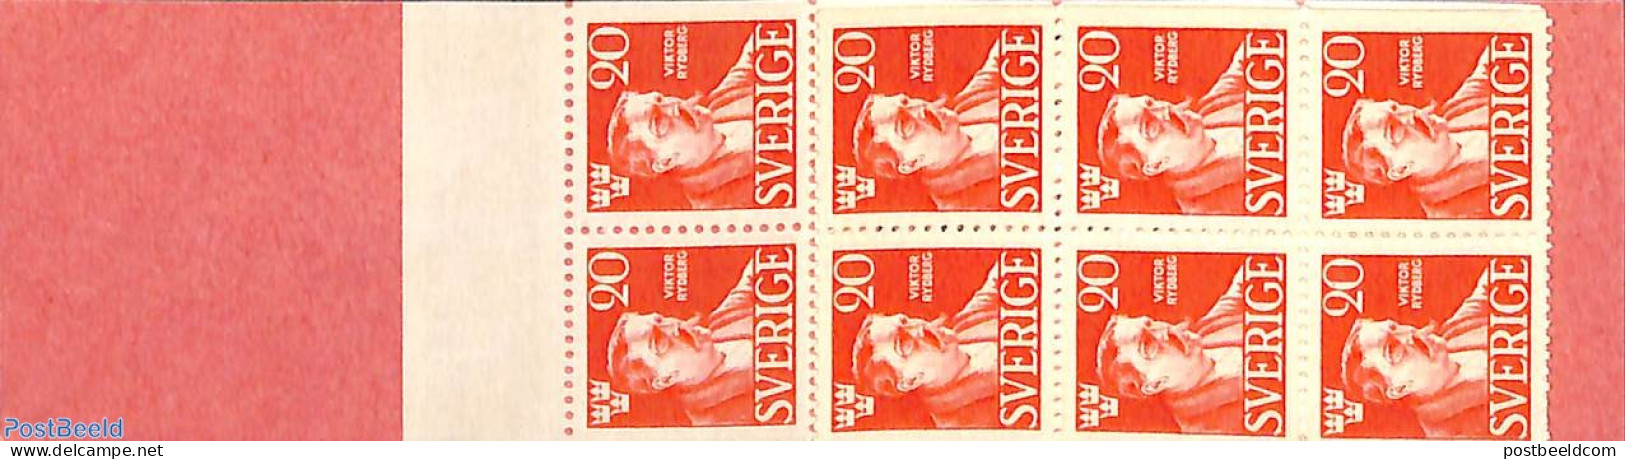 Sweden 1945 Viktor Rydberg Booklet, Mint NH, Stamp Booklets - Art - Authors - Nuevos